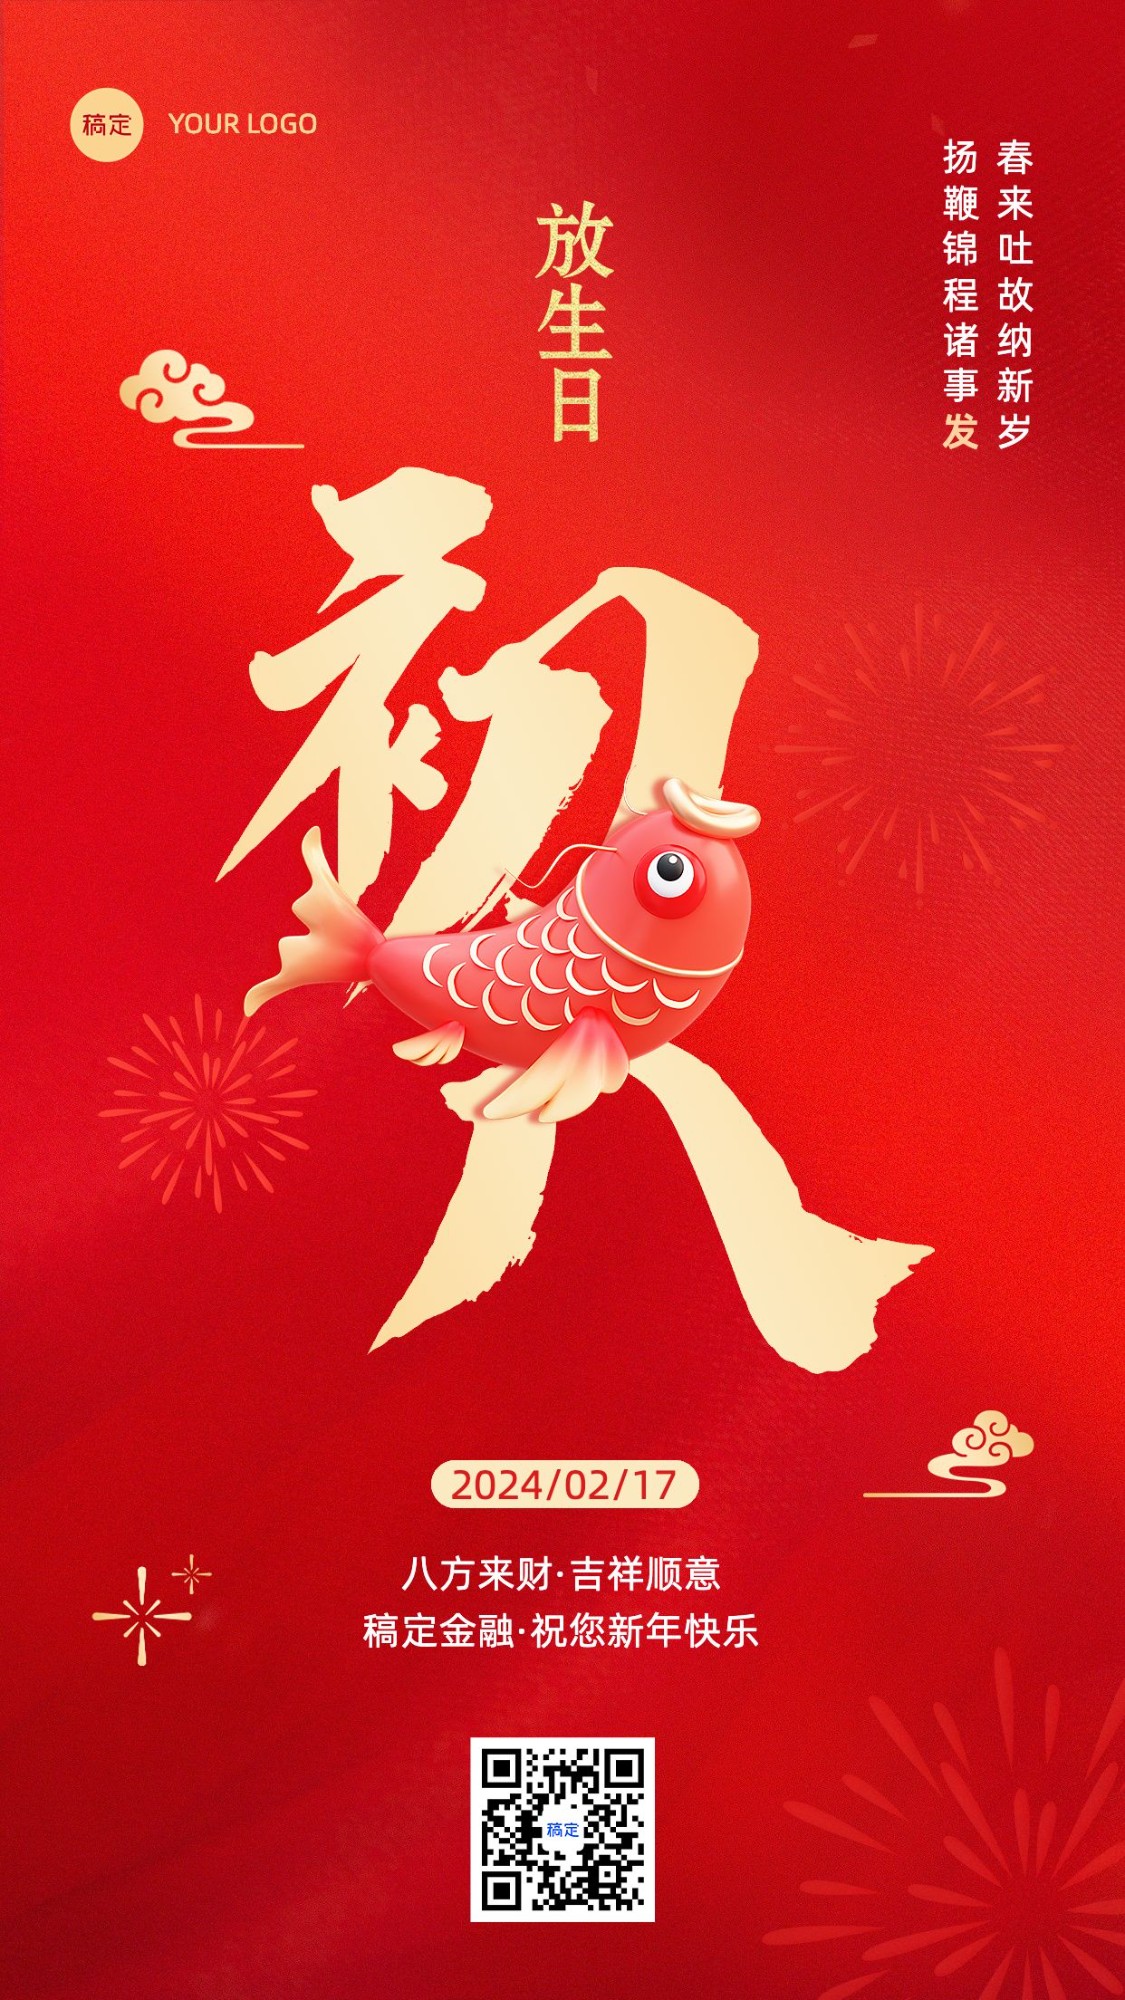 春节正月初八金融保险节日祝福喜庆大字手机海报套系预览效果